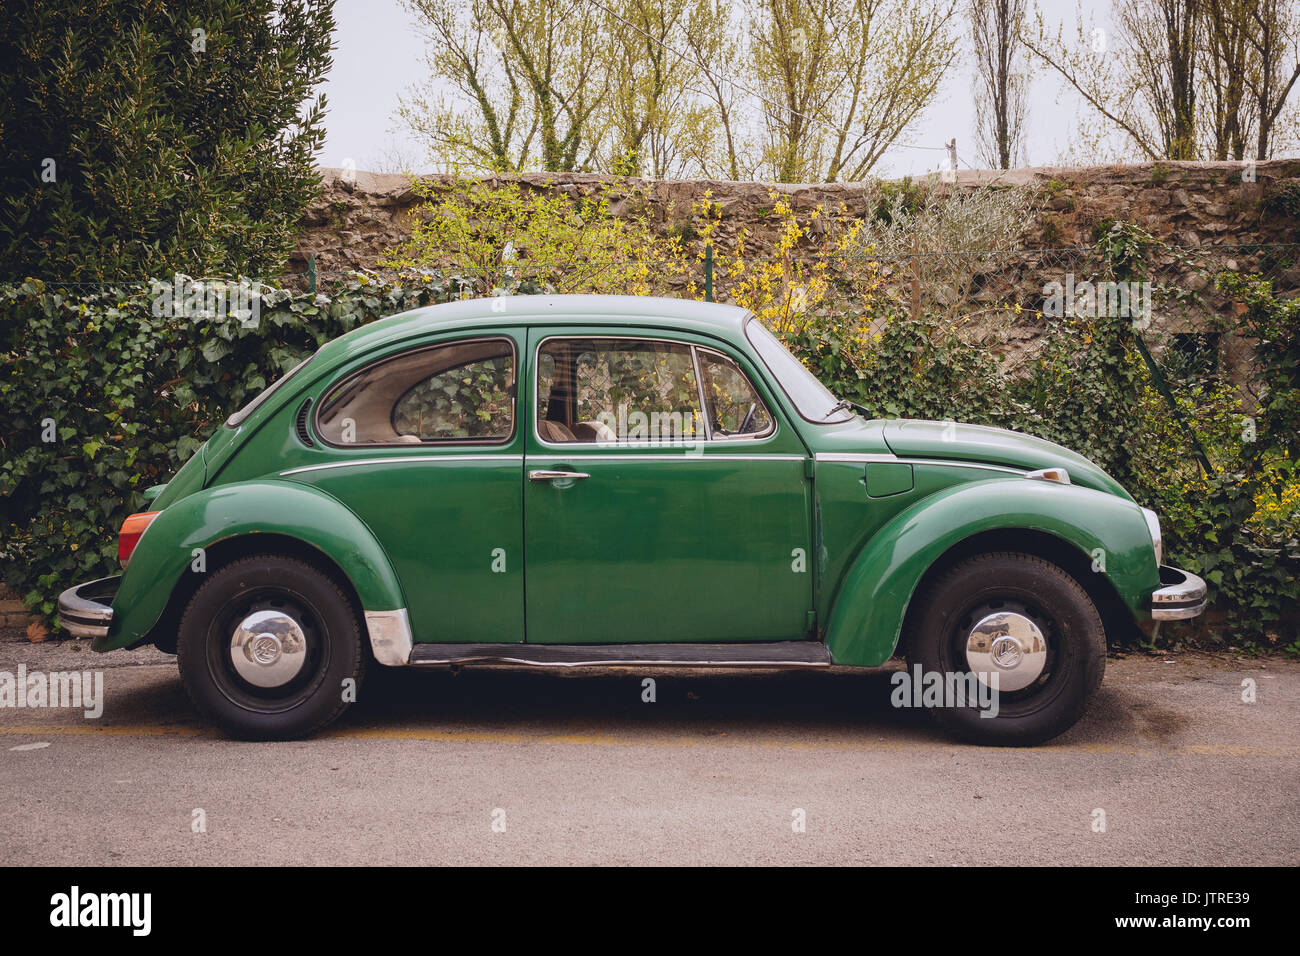 Vintage Volkswagen Beetle. Italy, 2017. Stock Photo